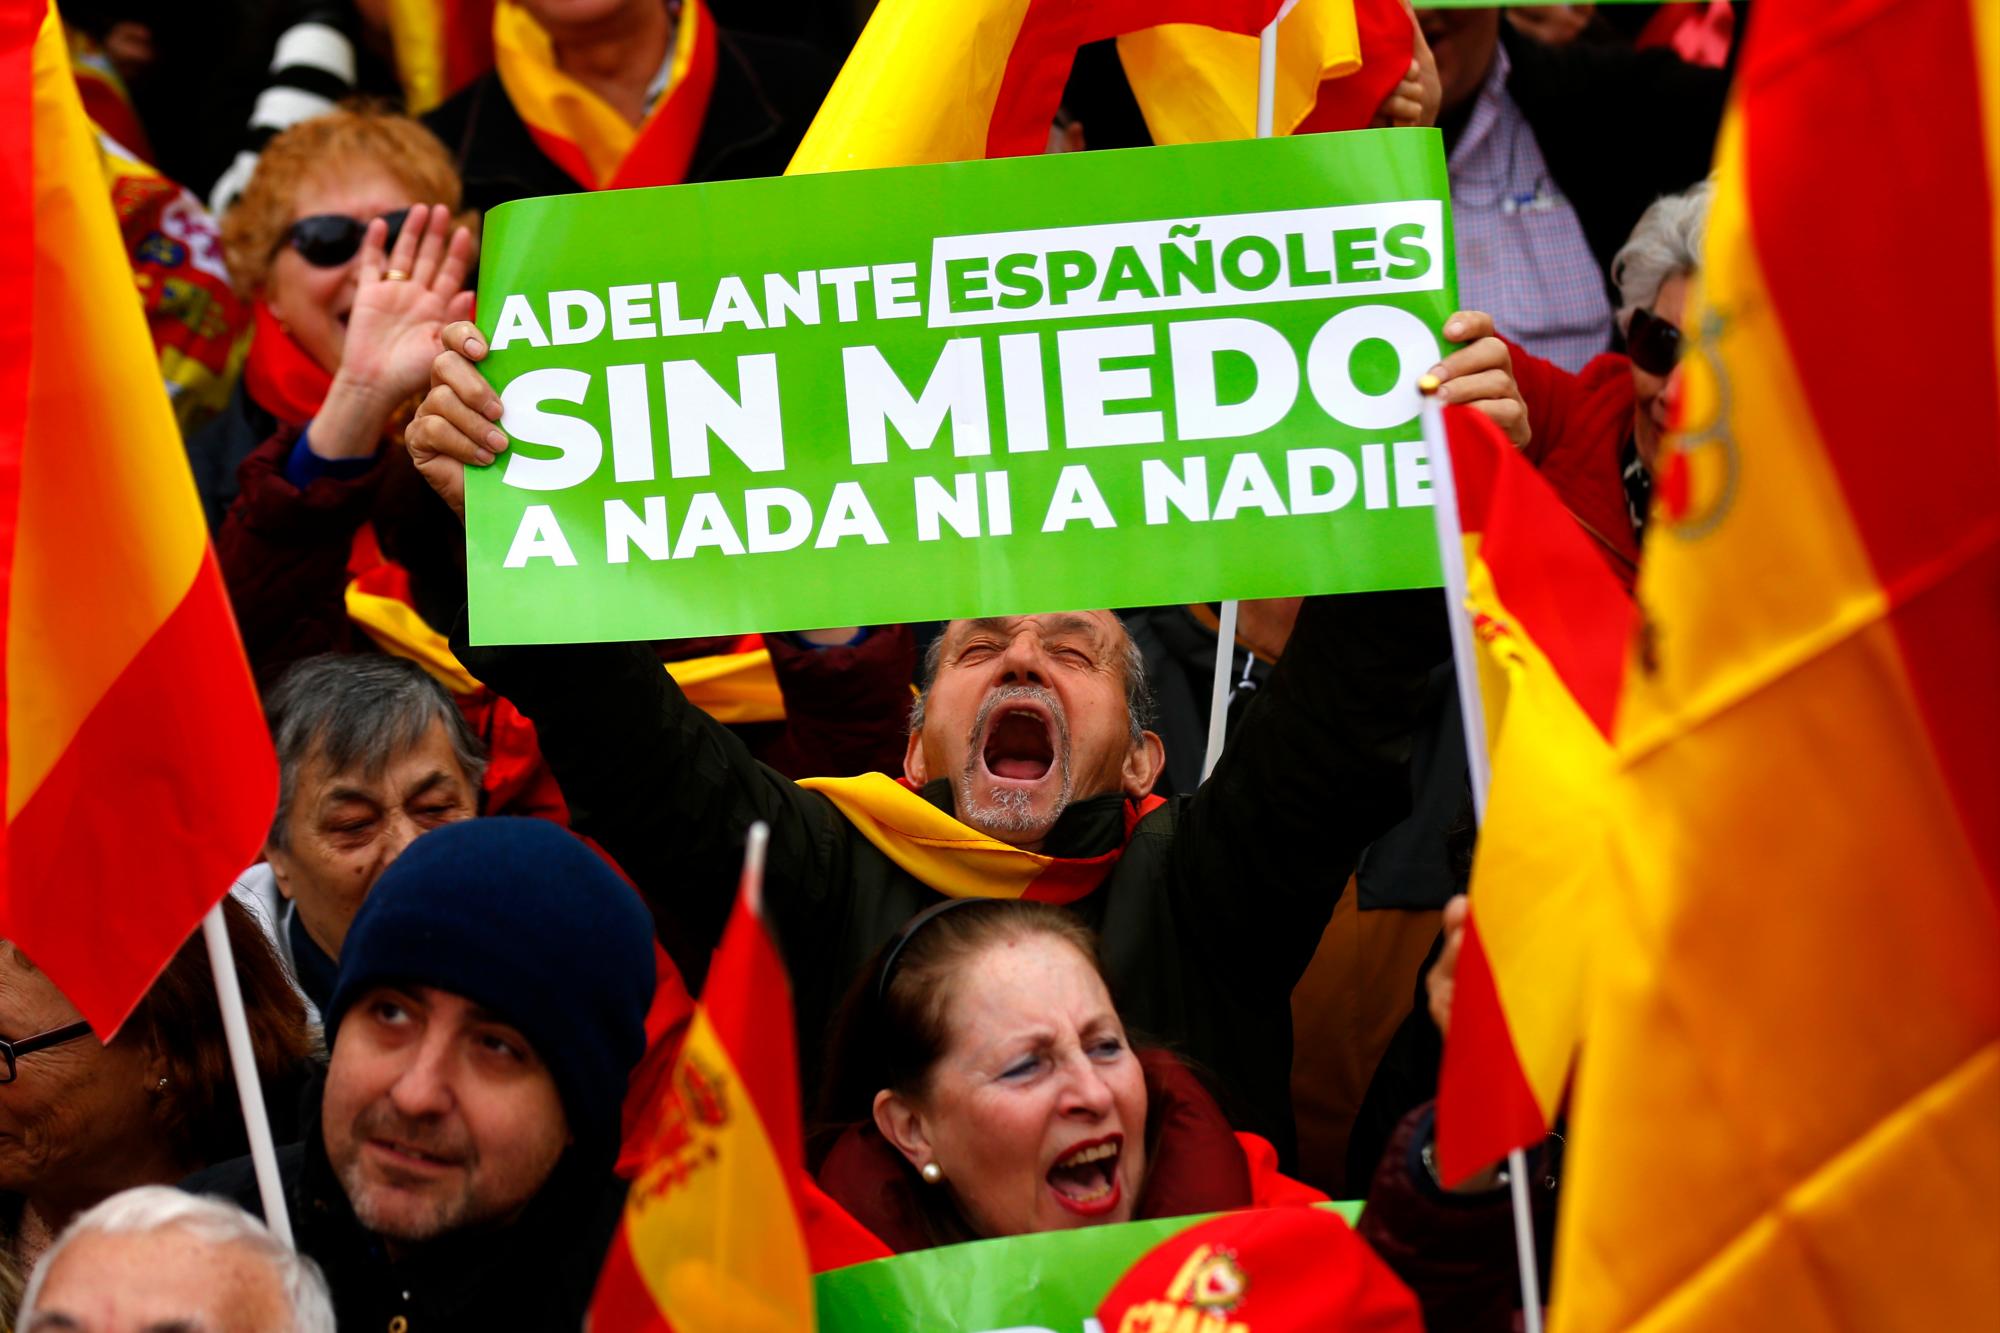 Los manifestantes sostienen pancartas y banderas españolas durante una protesta en Madrid, España, el domingo 10 de febrero de 2019.